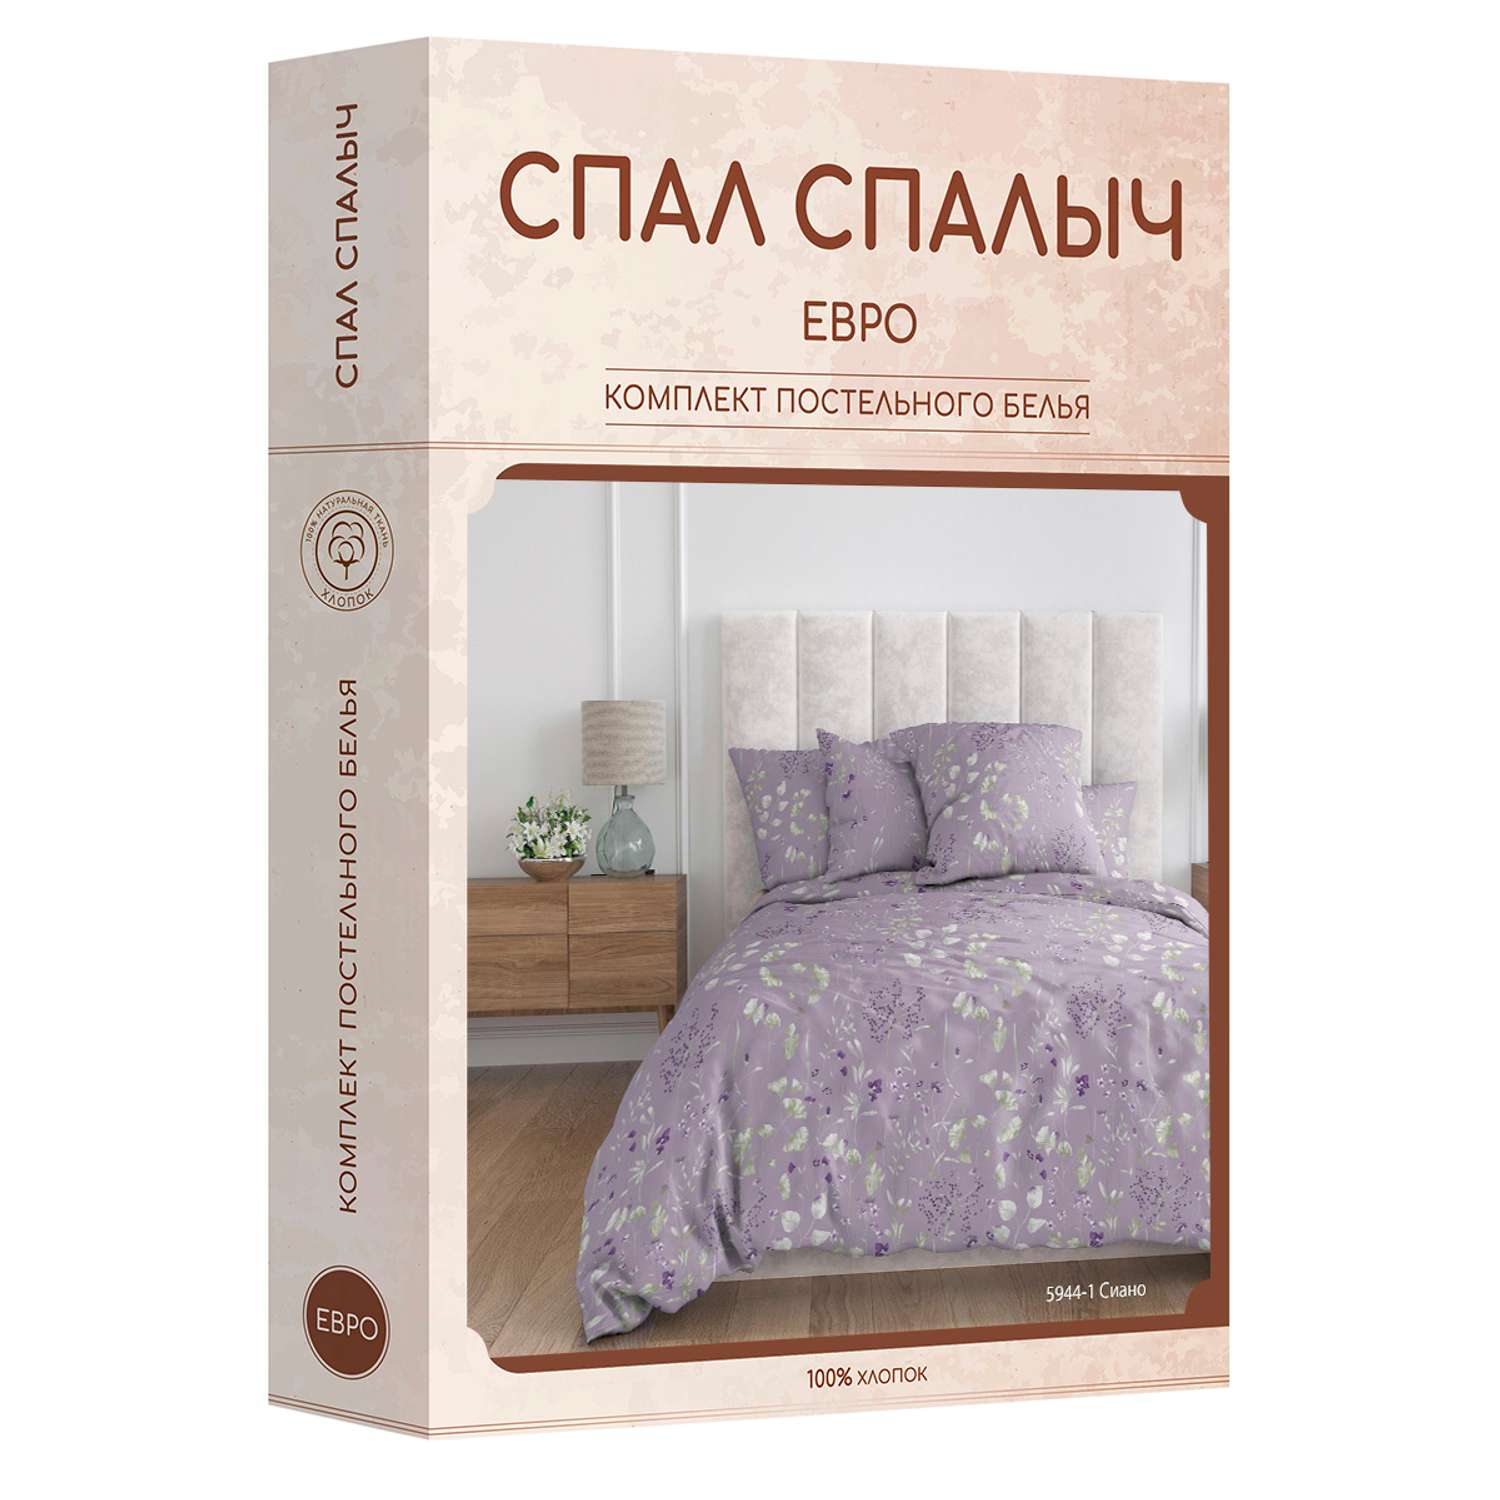 Комплект постельного белья Спал Спалыч Сиано евро - фото 8